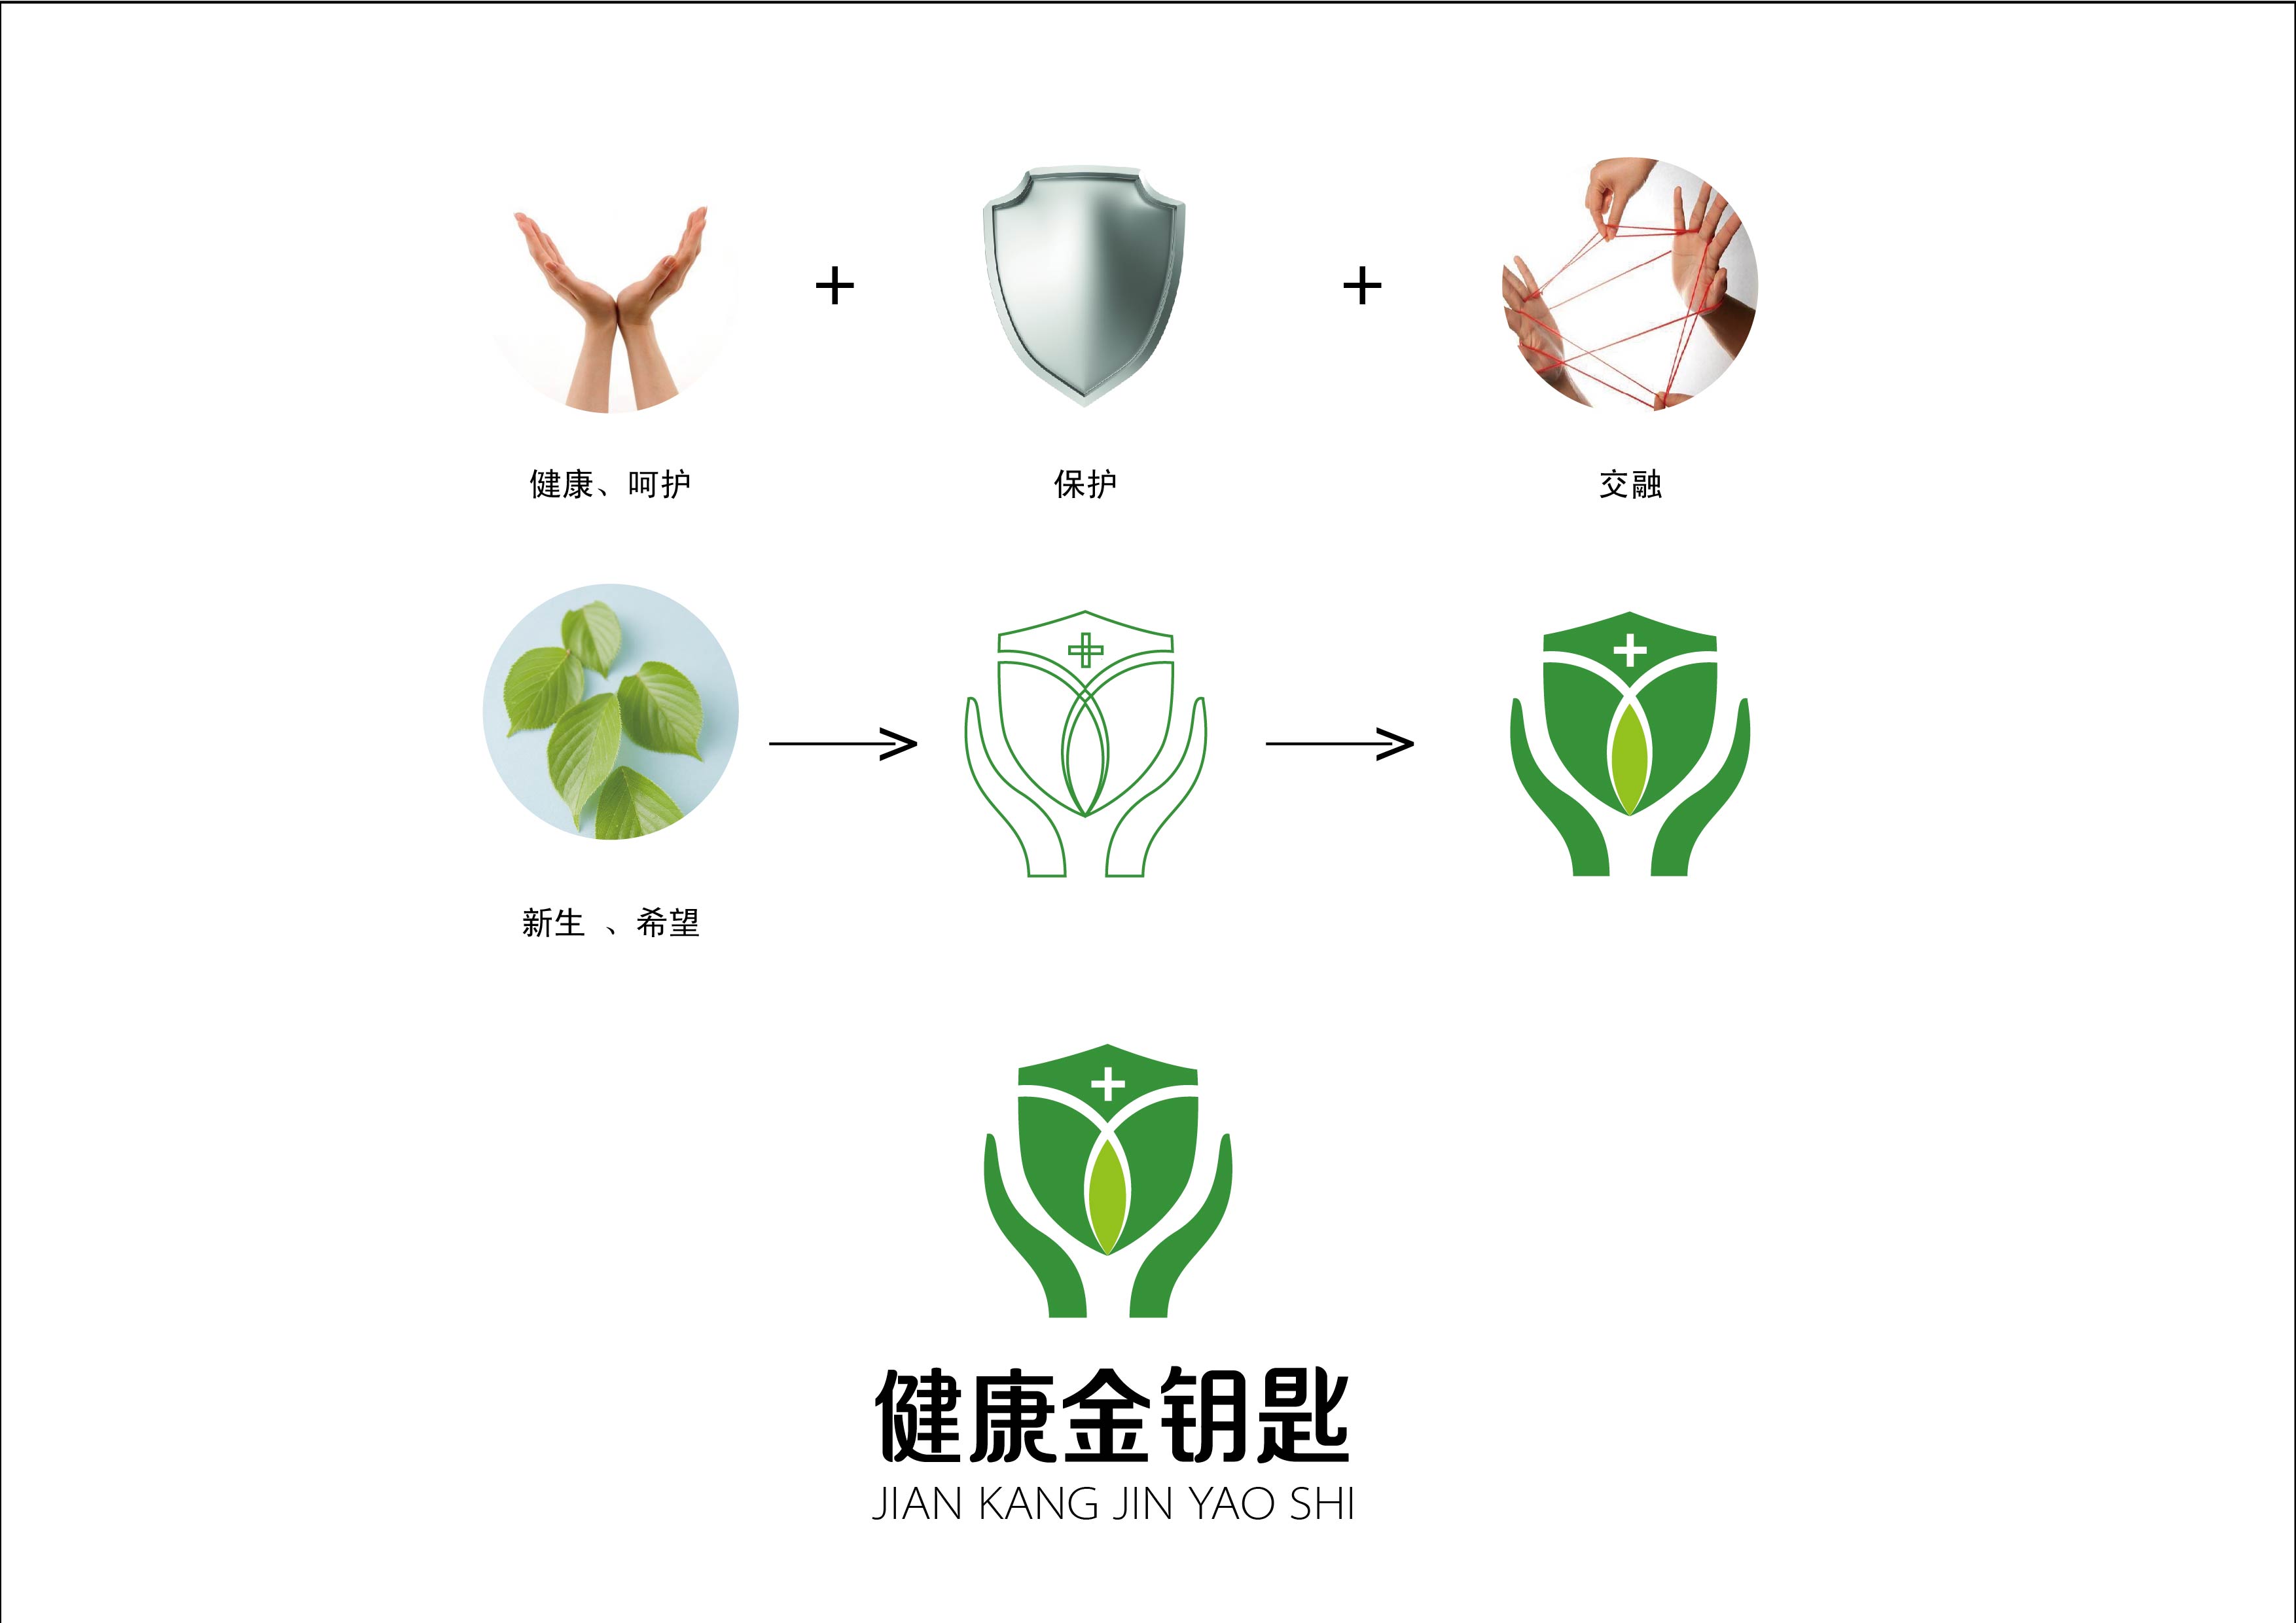 绿叶象征生命力,整体使用了绿色,同时也代表着健康.